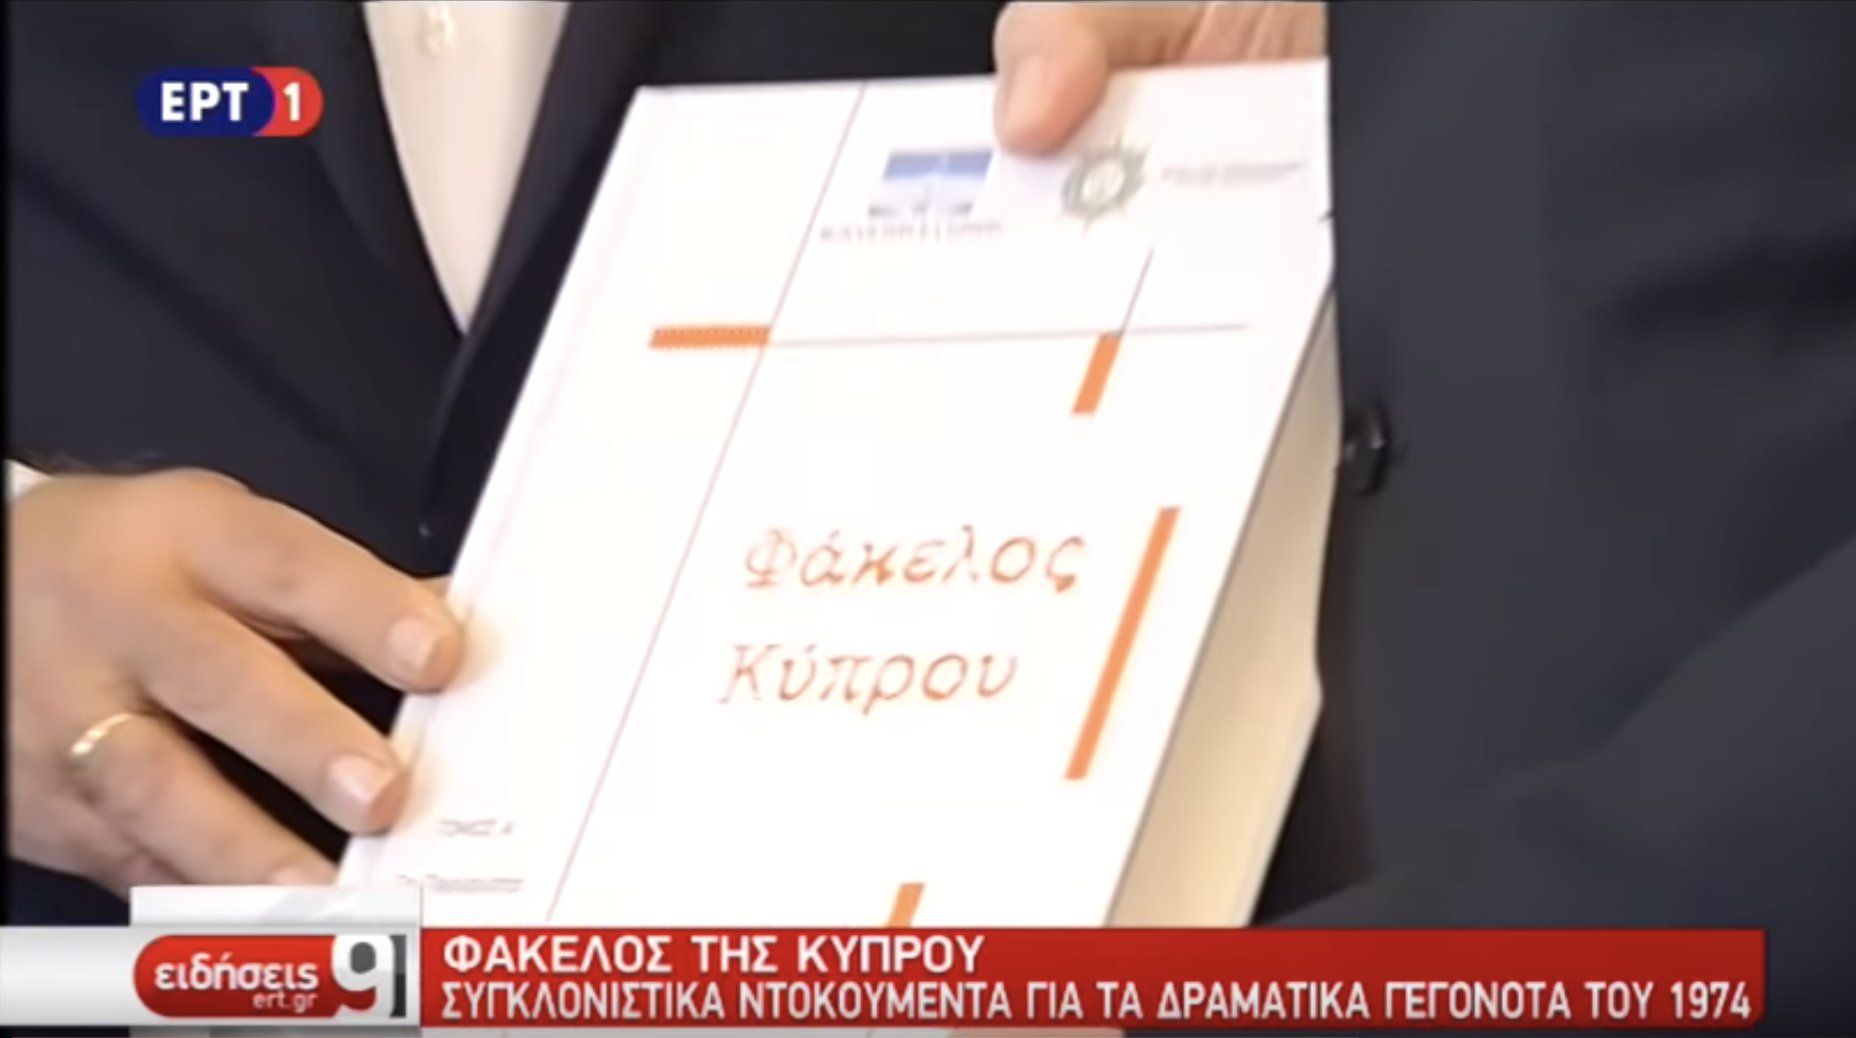 Αποκαλυπτικά στοιχεία από τον πρώτο τόμο του Φακέλου της Κύπρου (Ειδήσεις ΕΡΤ1, 24/10/18)